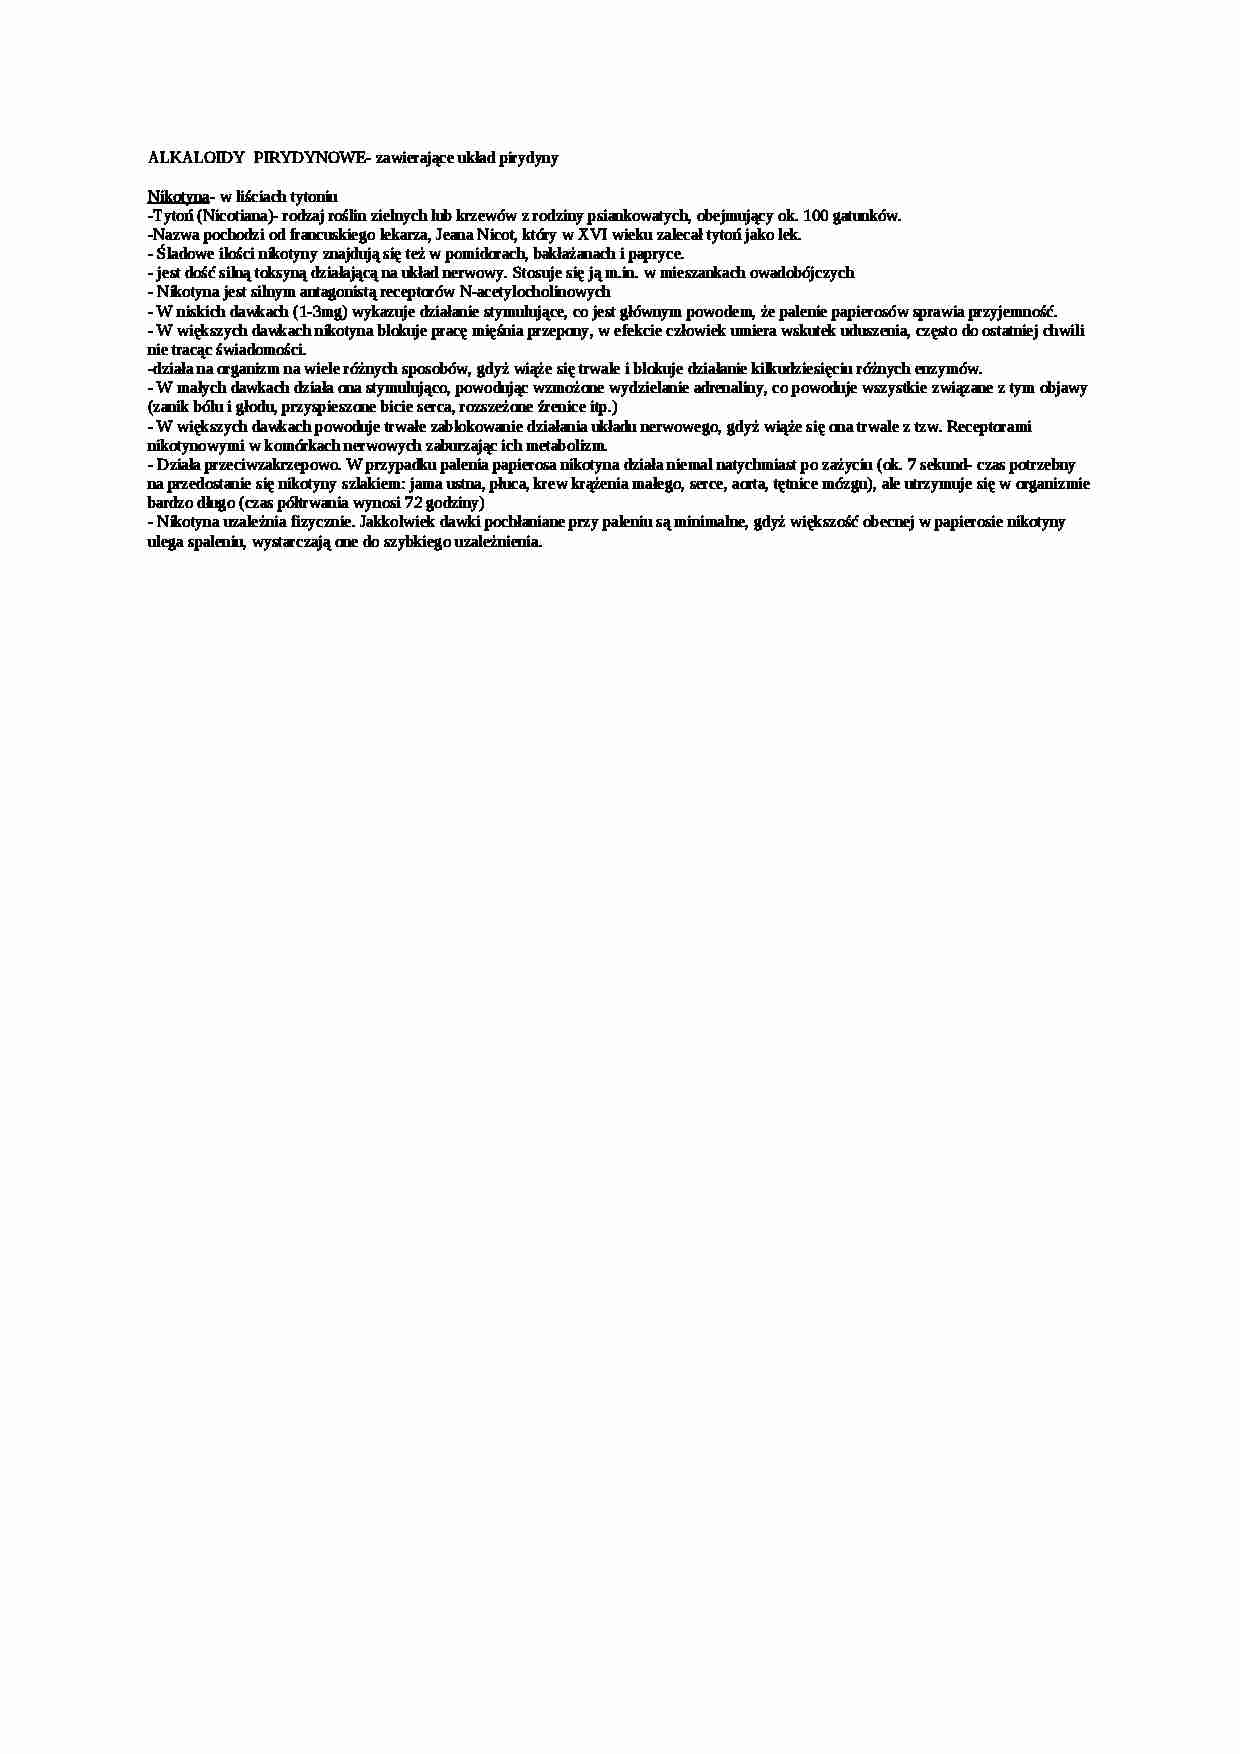 Wykład - alkaloidy pirydynowe - strona 1